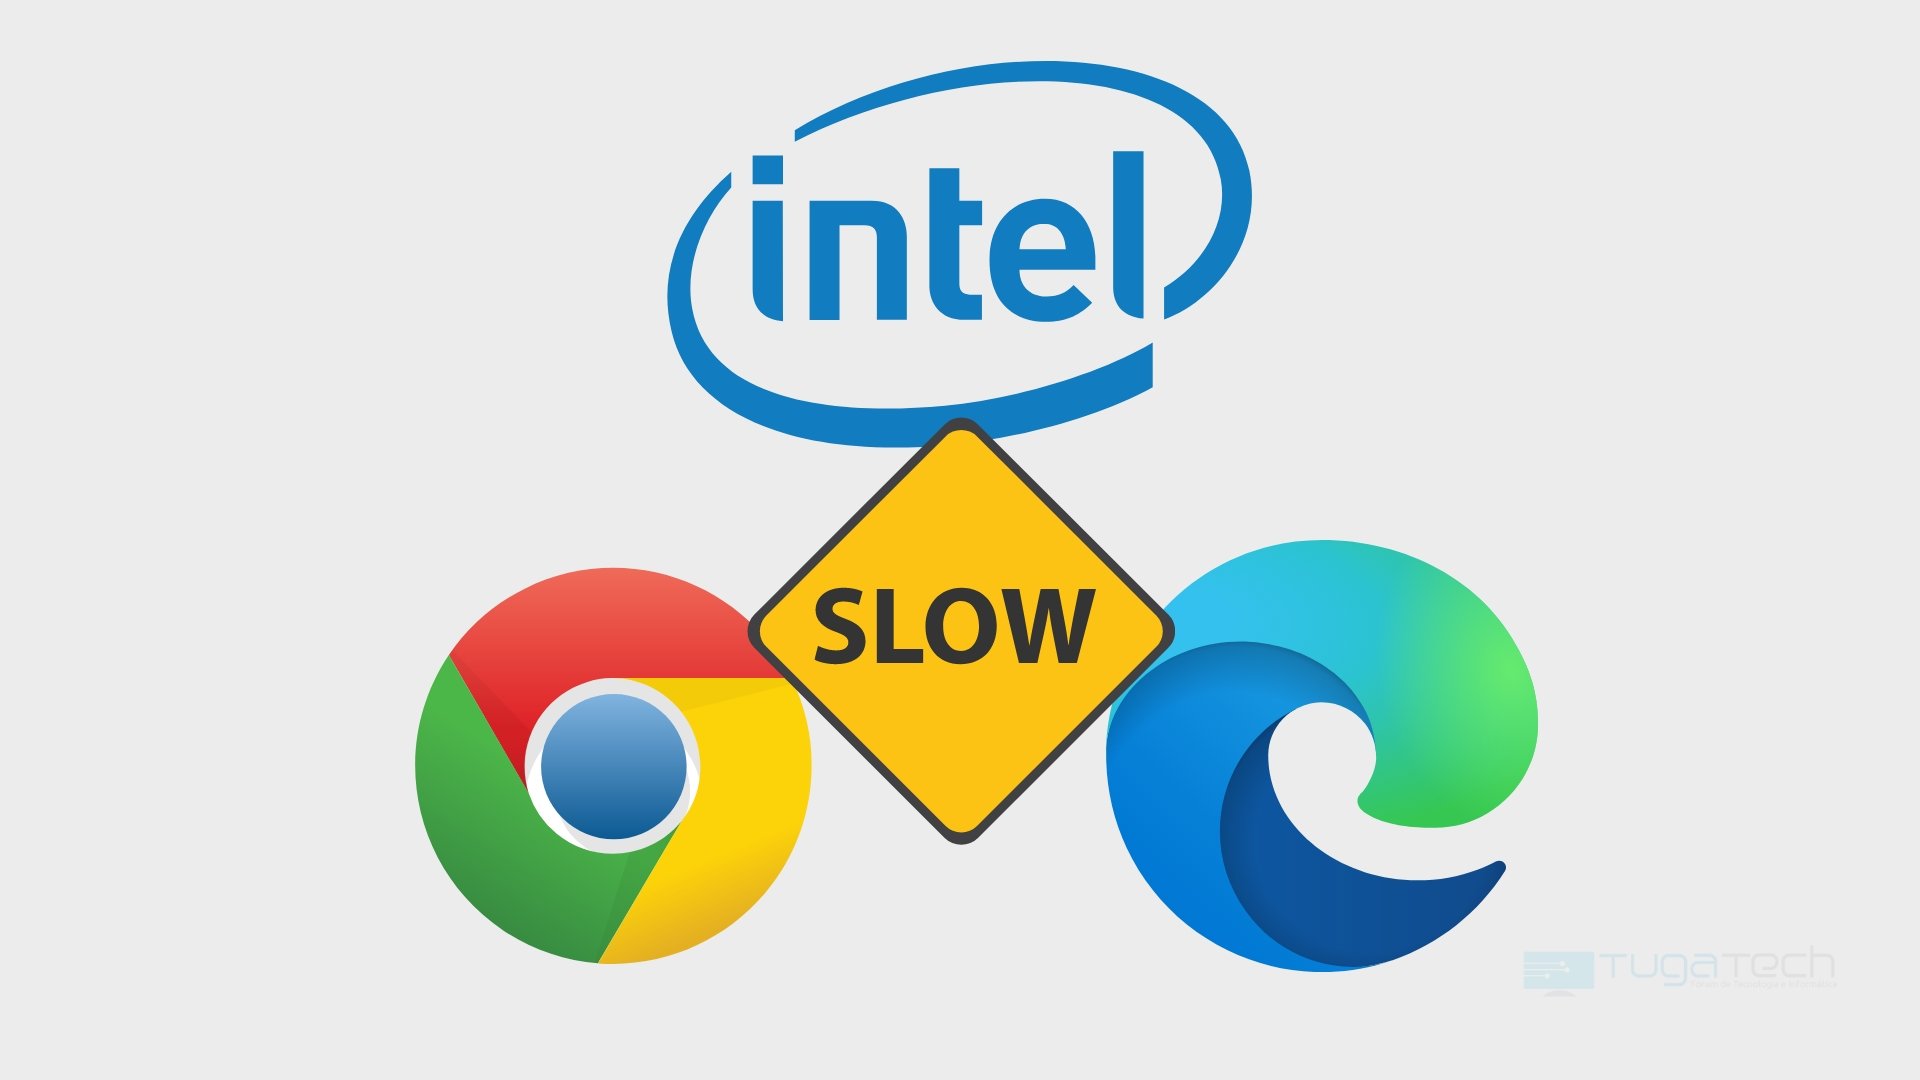 Intel com lentidão sobre o Chrome e Edge